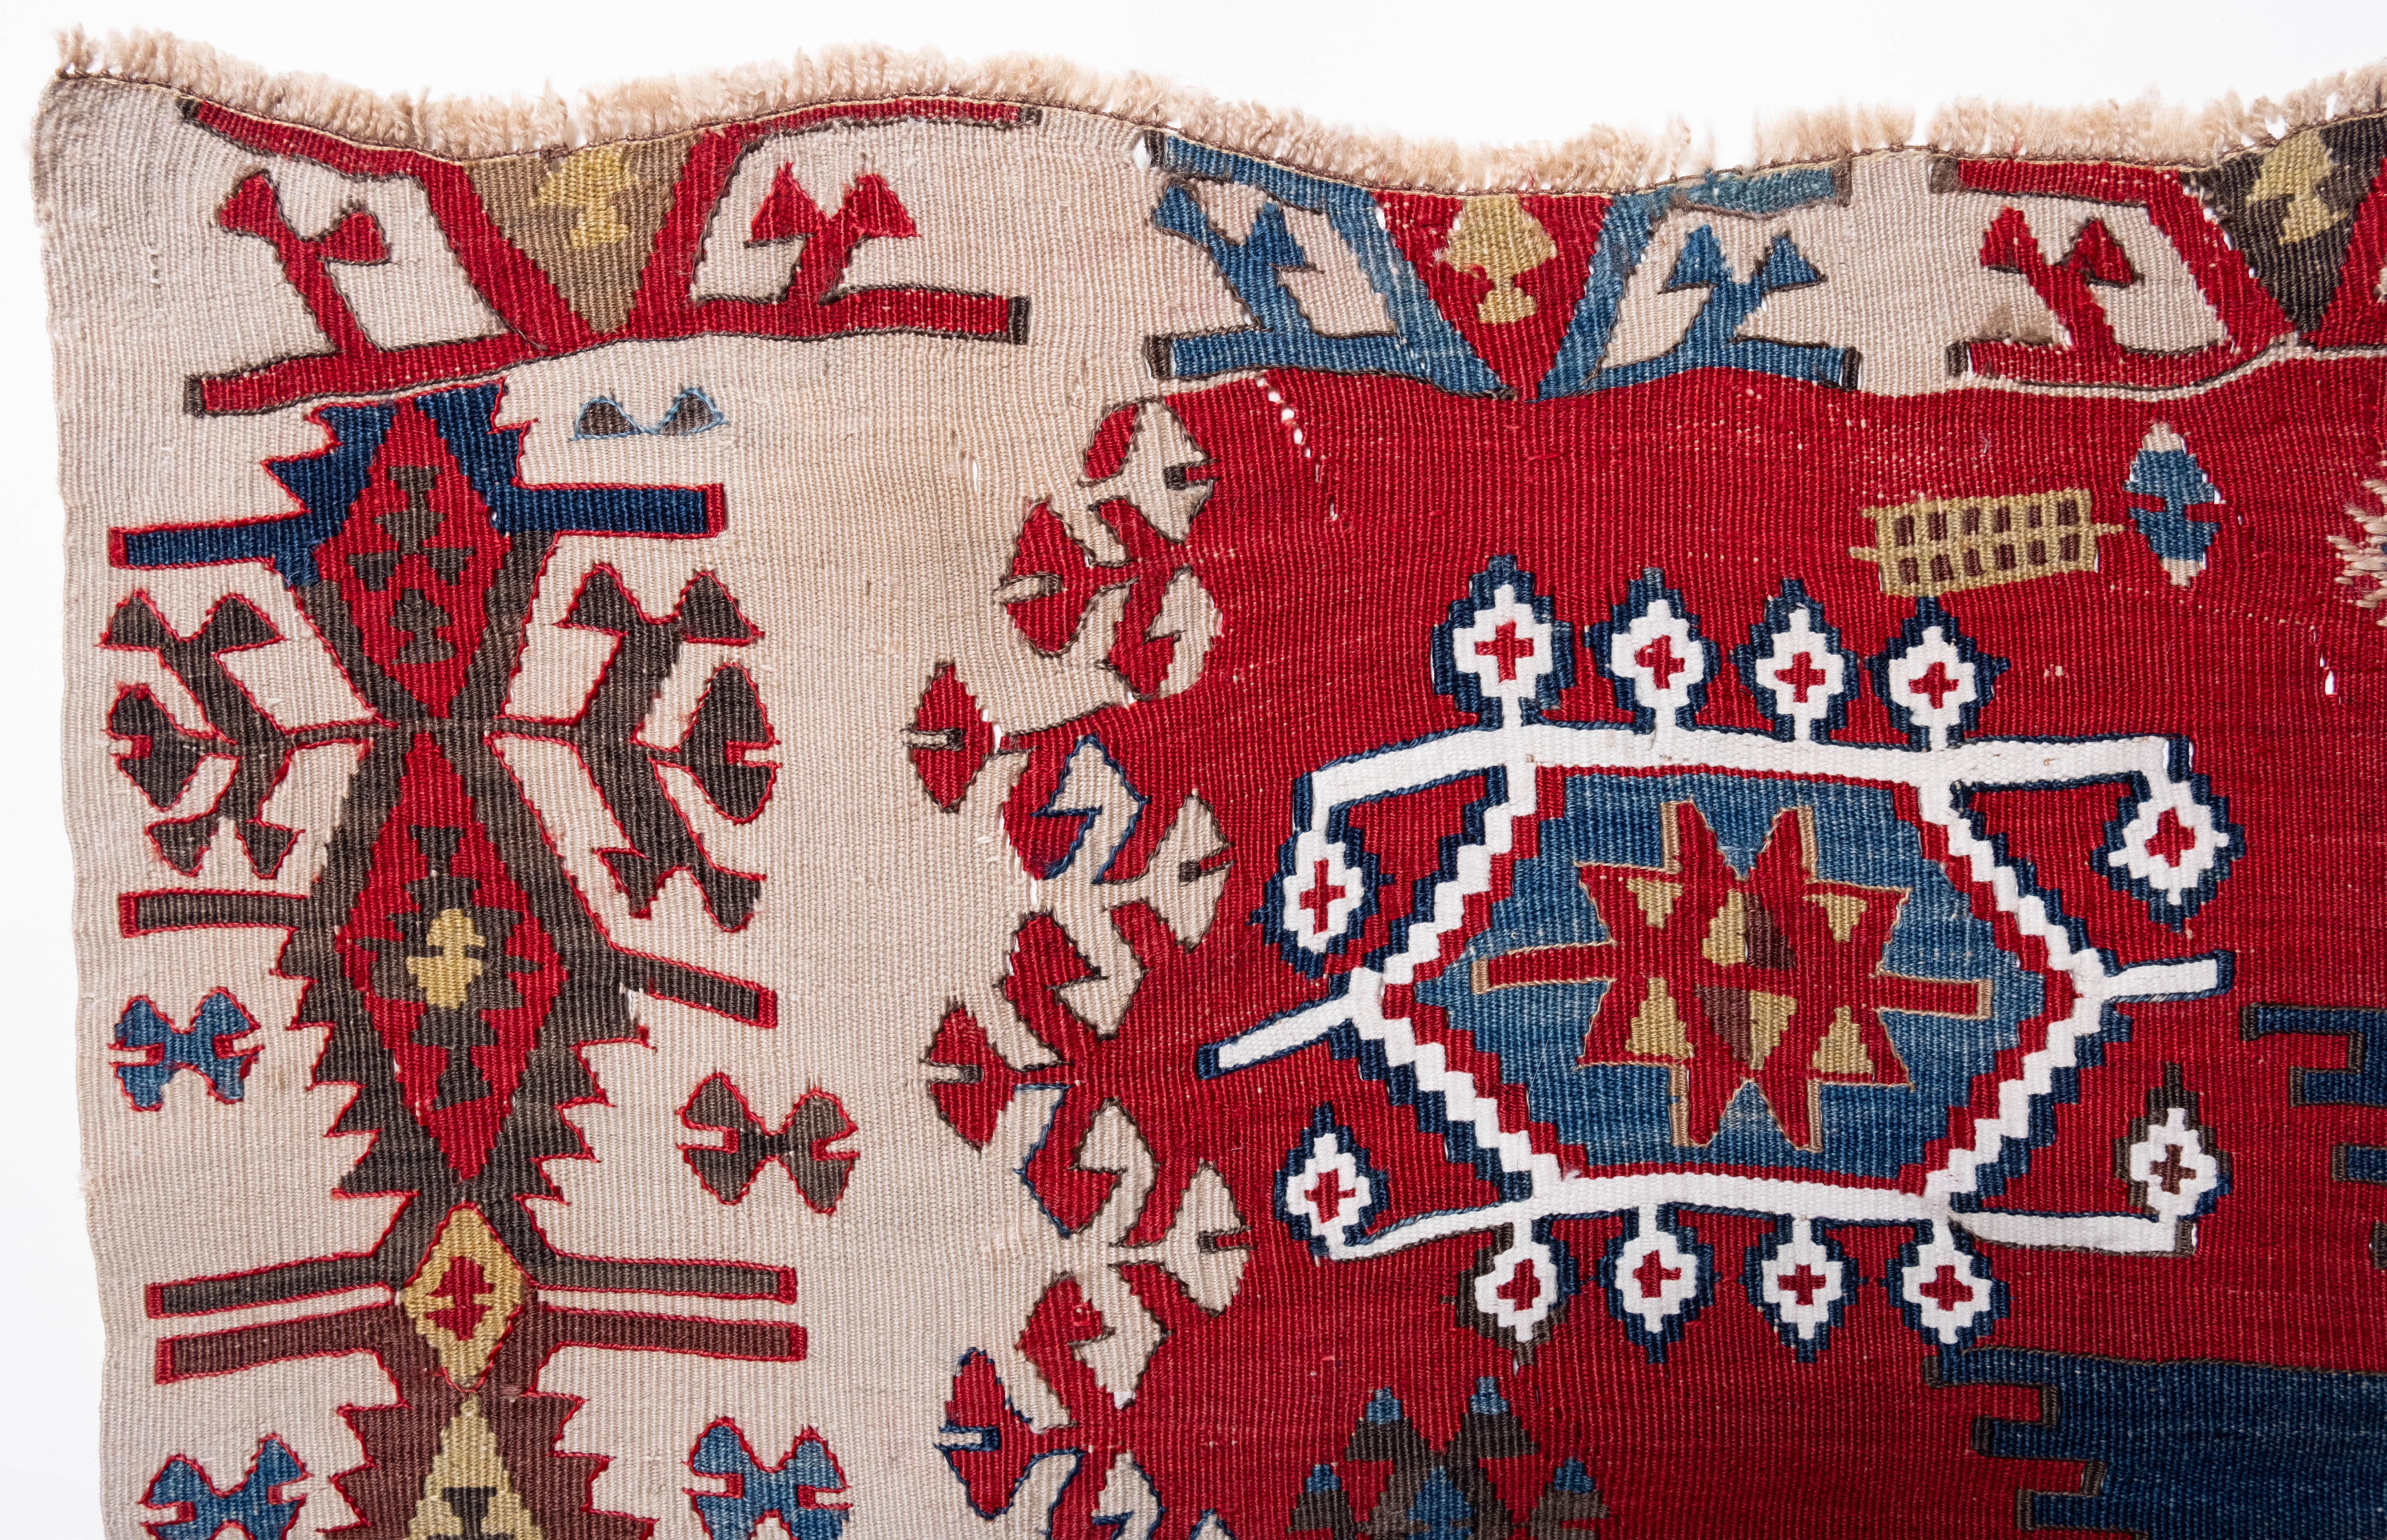 Il s'agit d'un Kilim ancien d'Anatolie orientale de la région de Rashwan, Malatya, dont la composition des couleurs est rare et magnifique.

La différence de teinture entre le côté gauche et le côté droit prouve qu'il a été fait à la main par une